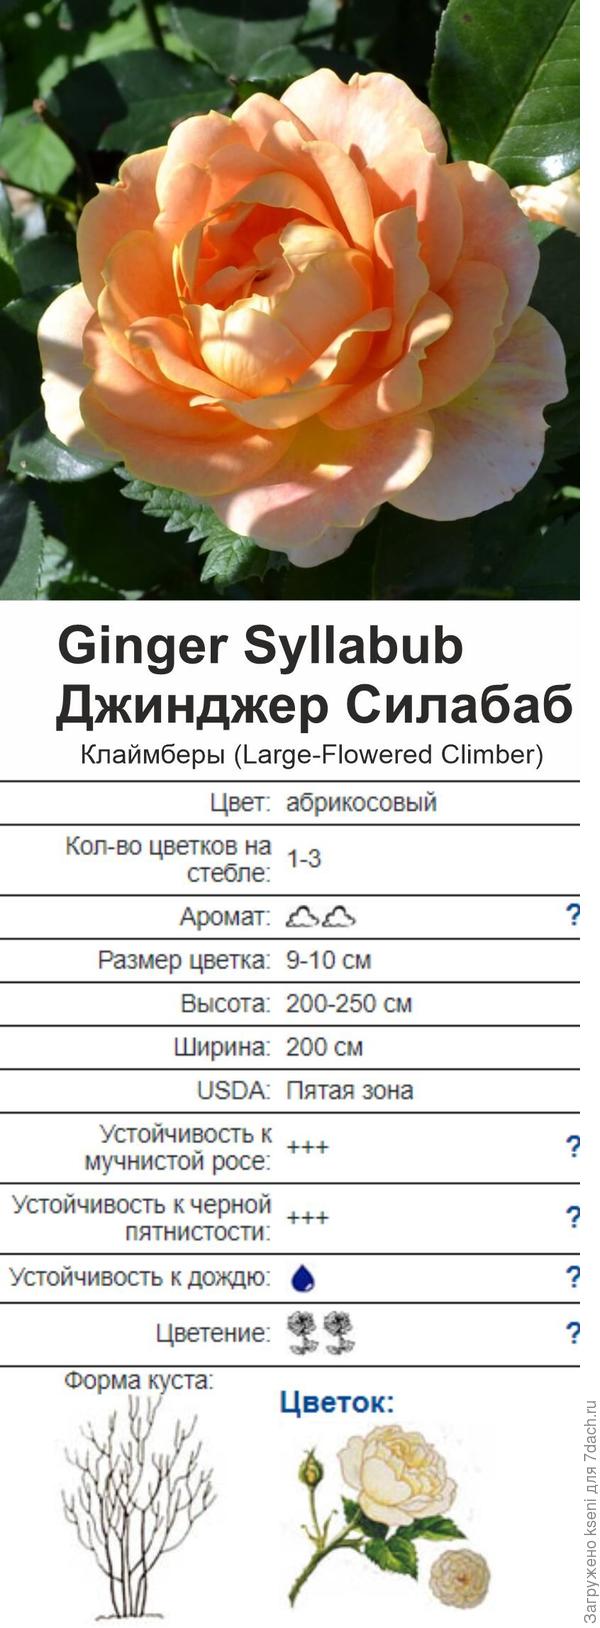 Ginger Syllabub